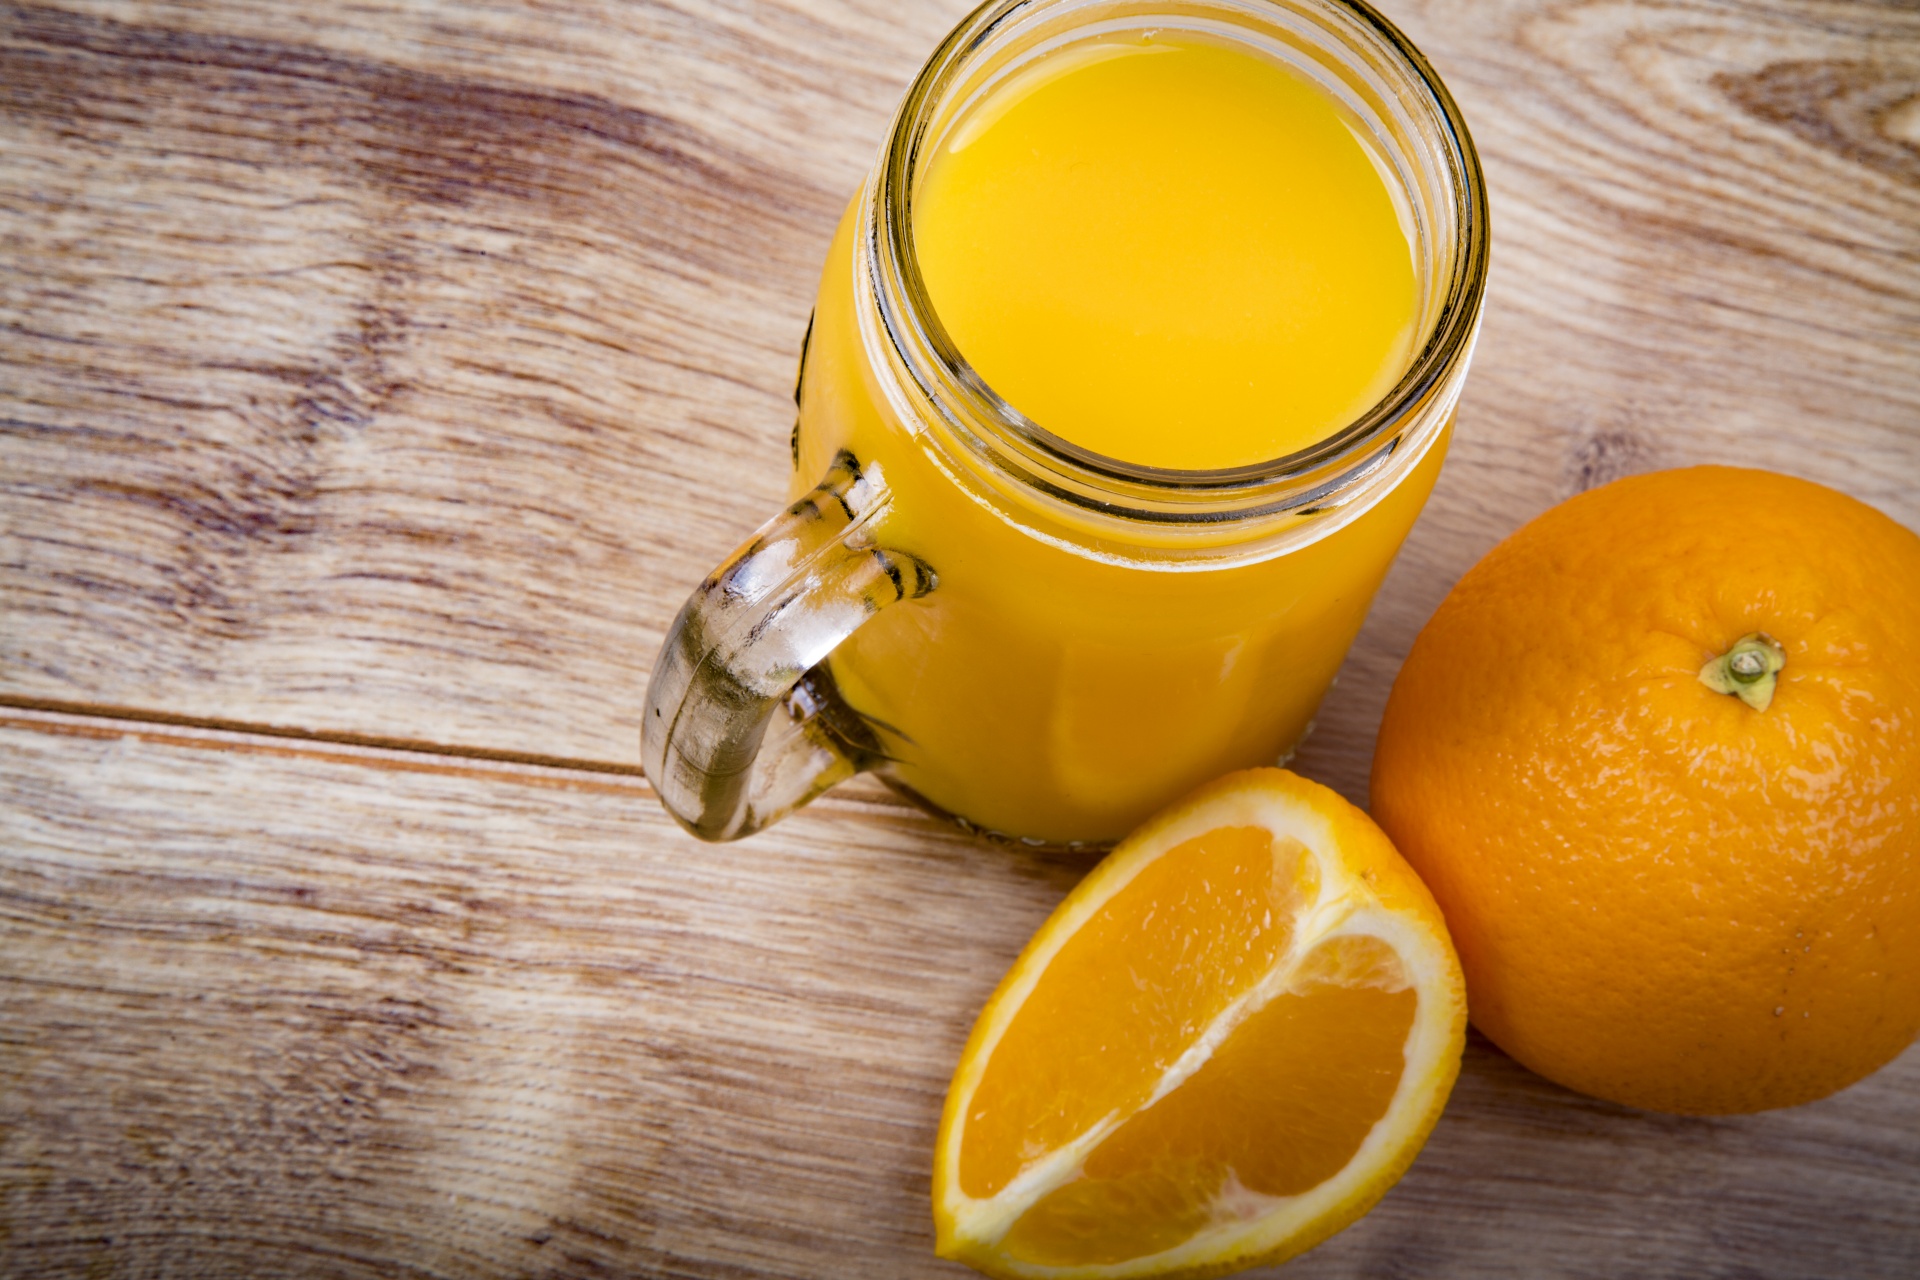 unlce matt's organic orange juice